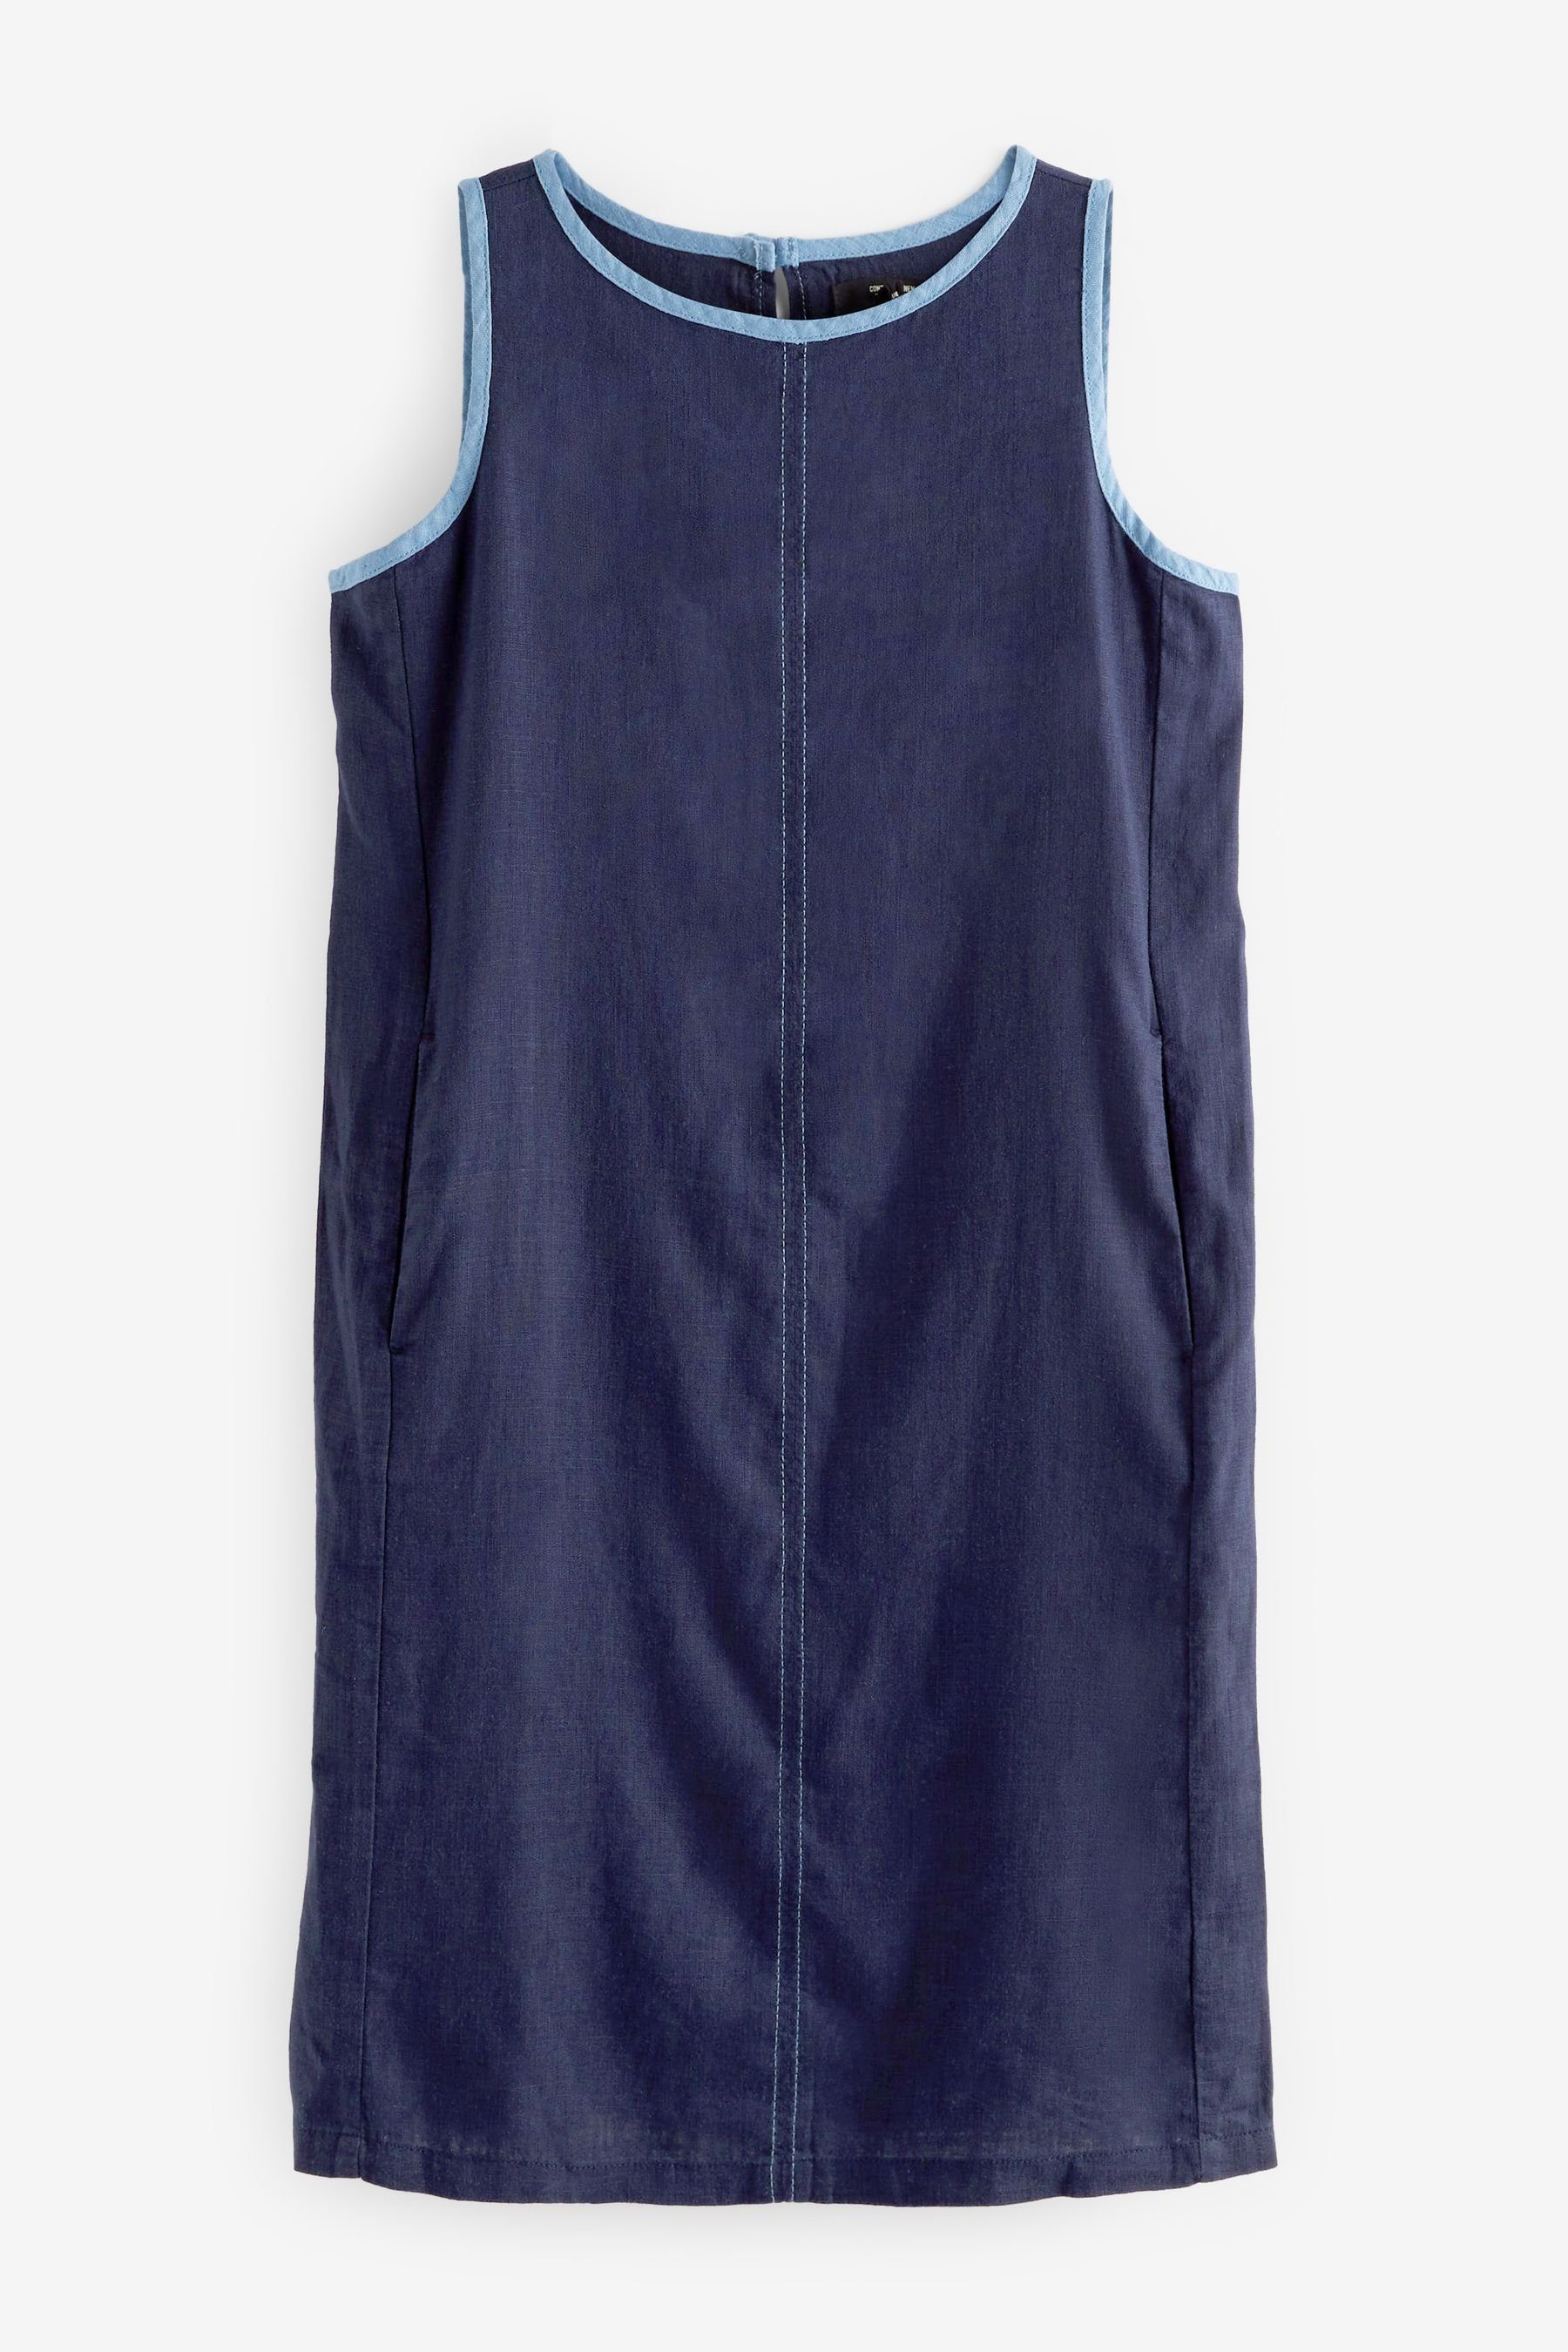 Next Minikleid Etuikleid aus Leinenmischgewebe, Petite-Größe (1-tlg) Navy Blue Contrast | Kleider